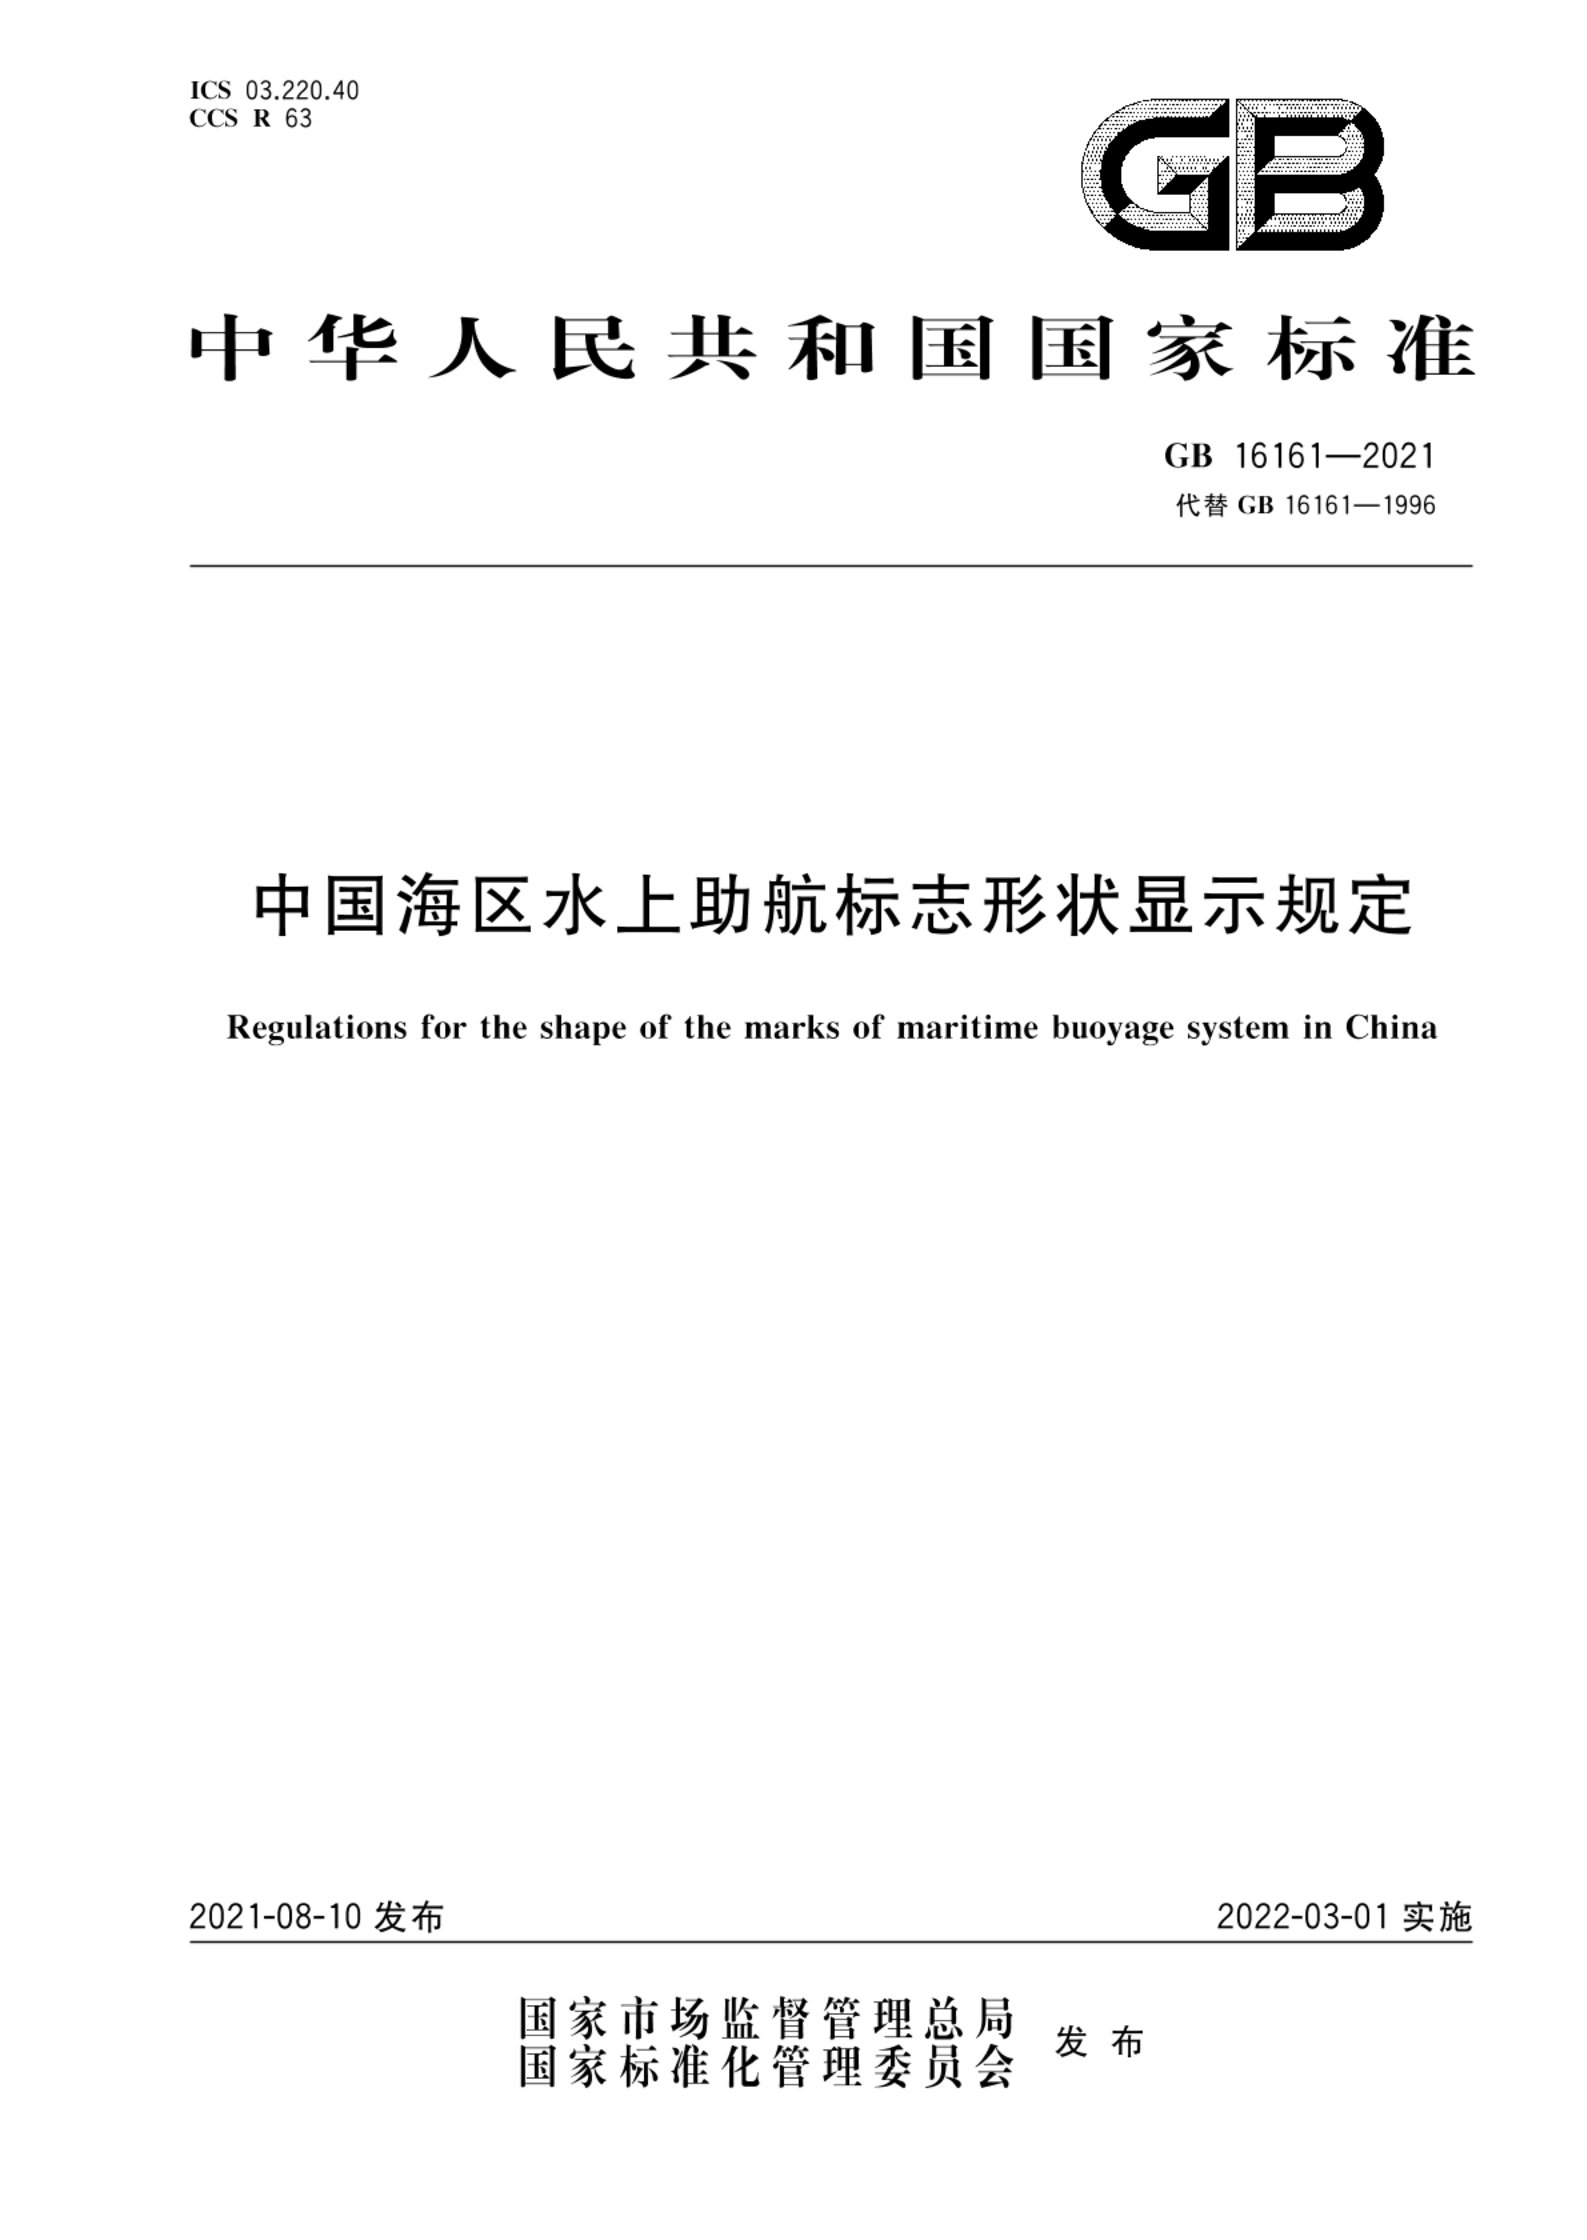 GB 16161-2021中国海区水上助航标志形状显示规定